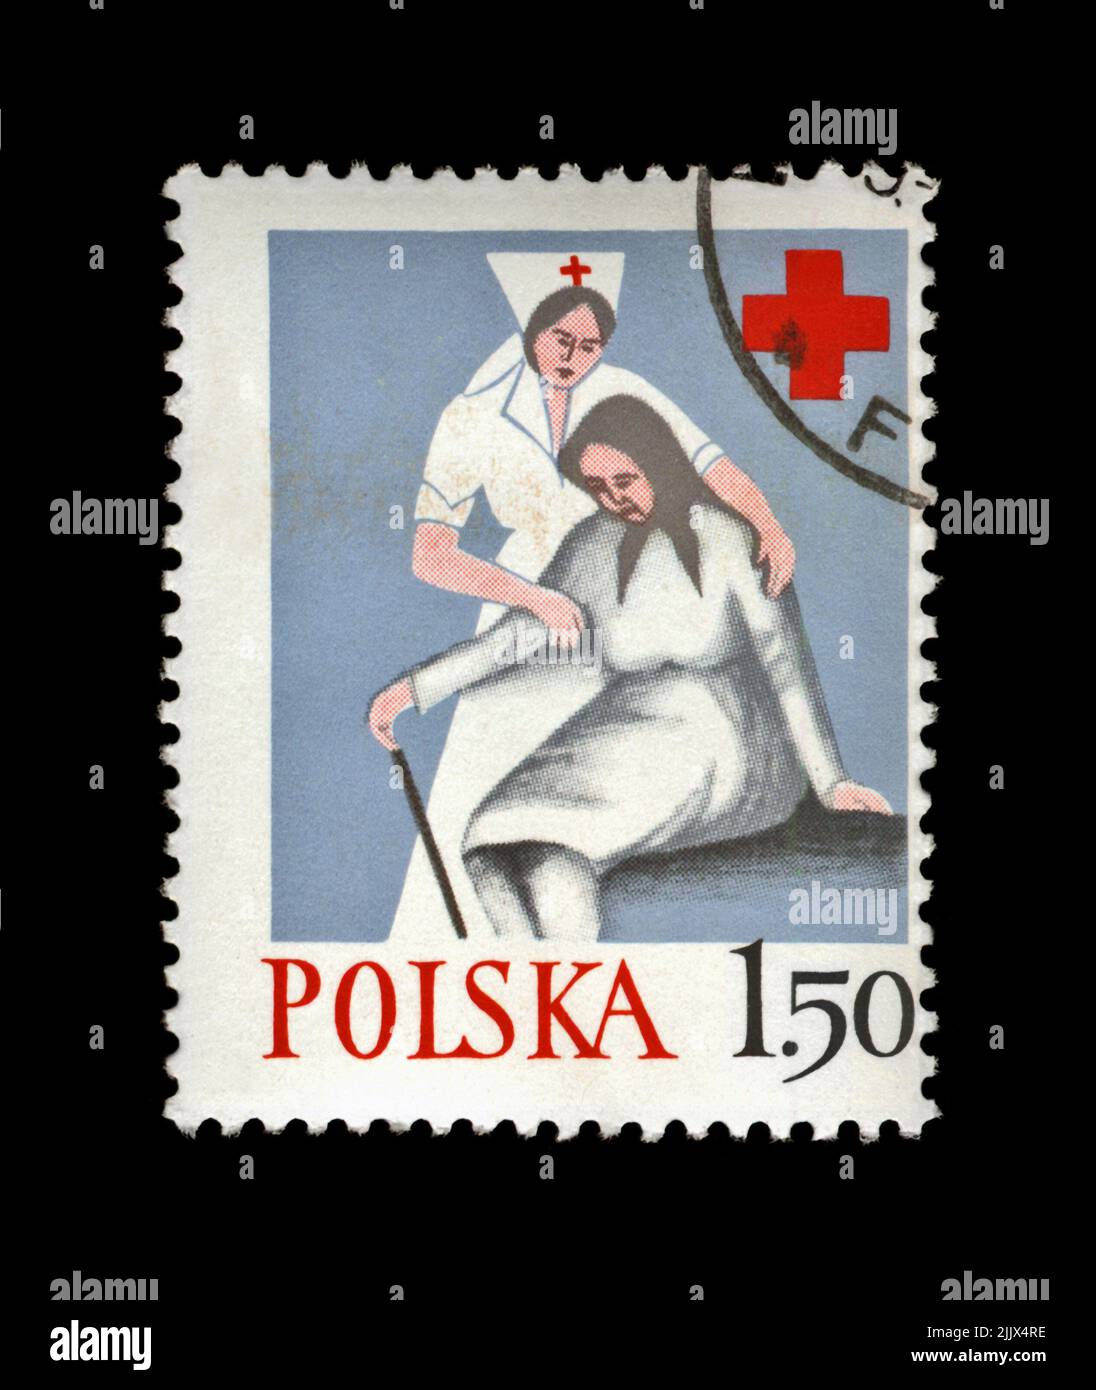 POLONIA - CIRCA 1977, JAN 24: Timbro cancellato stampato in Polonia, mostra infermiere aiuto vecchia donna, Croce Rossa Polacca, circa 1977. vintage post timbro isolato o Foto Stock